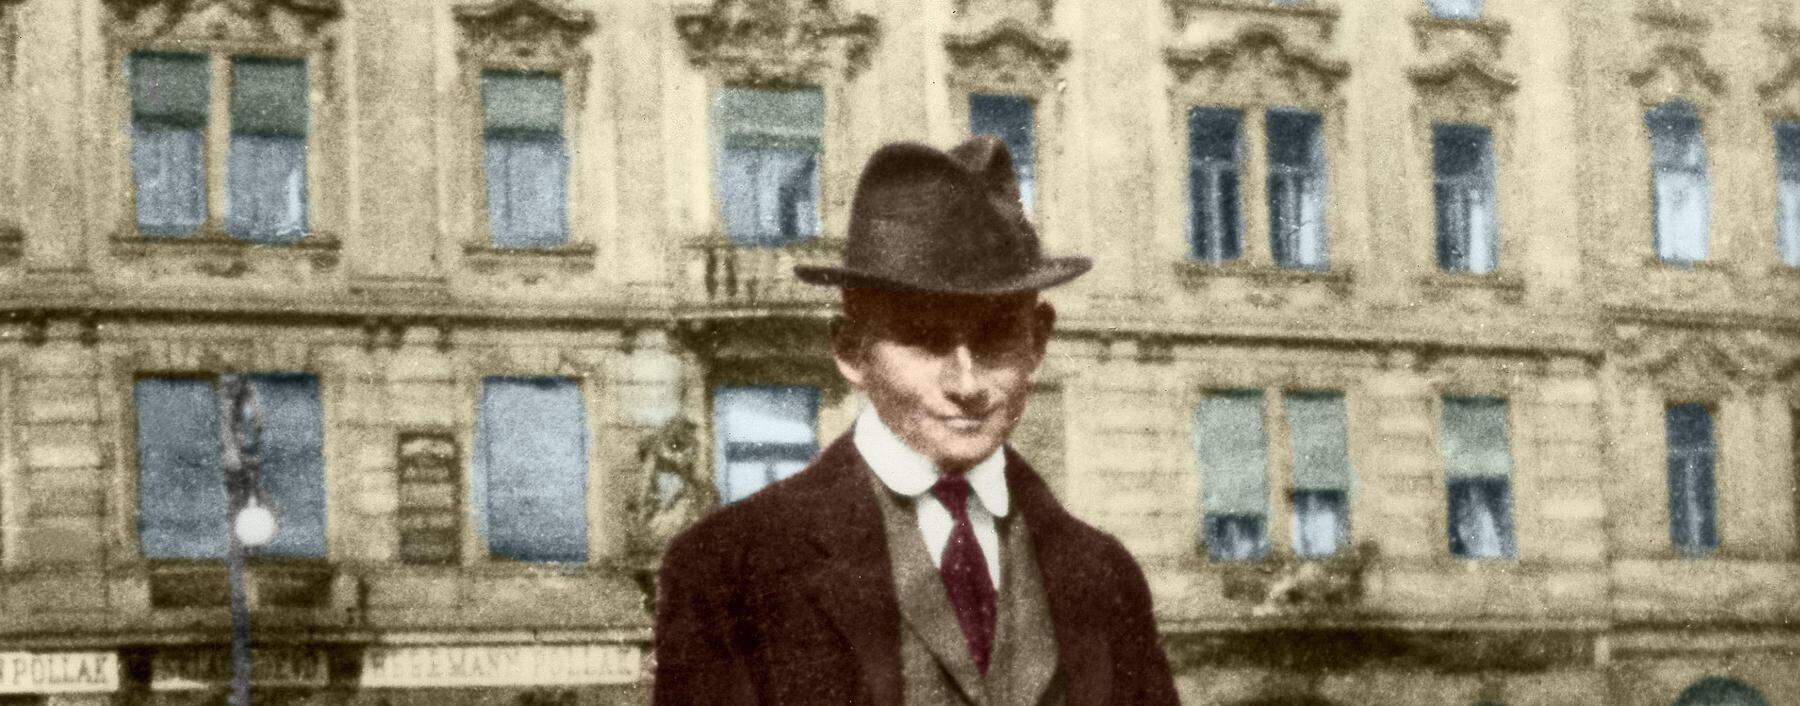 Being Kafka (hier vor seinem Prager Wohnhaus, um 1910): Viele Junge vermeinen sich auch heute noch in Kafka wiederzufinden, TikTok zeugt davon.